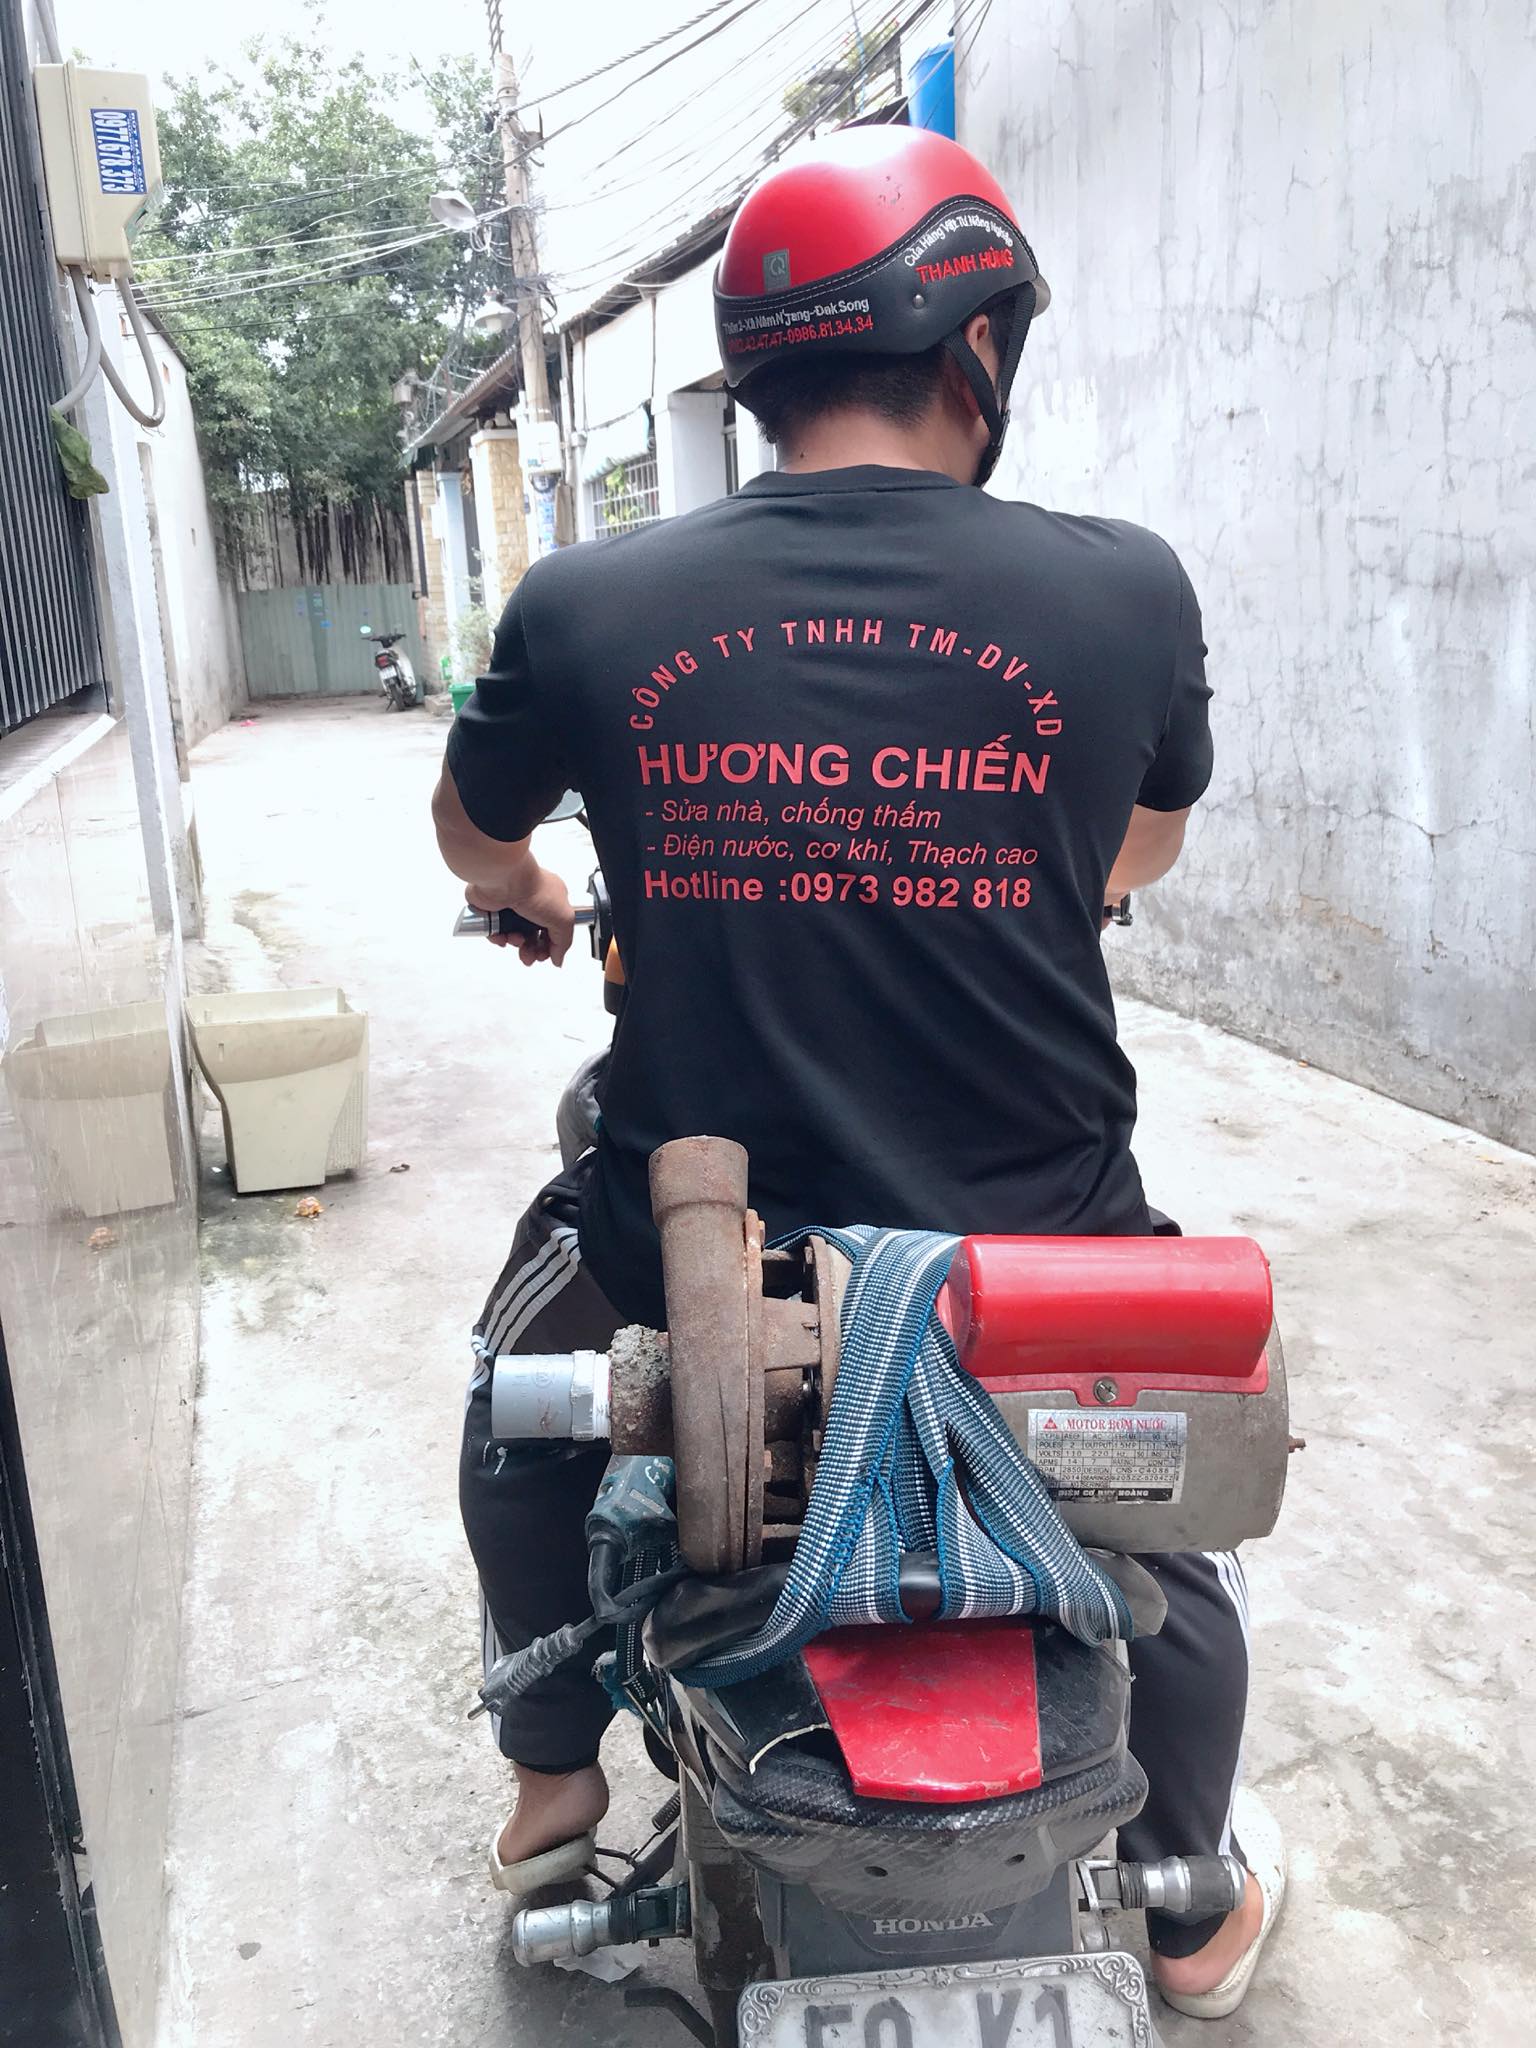 thợ sửa máy bơm Quận Tân Bình